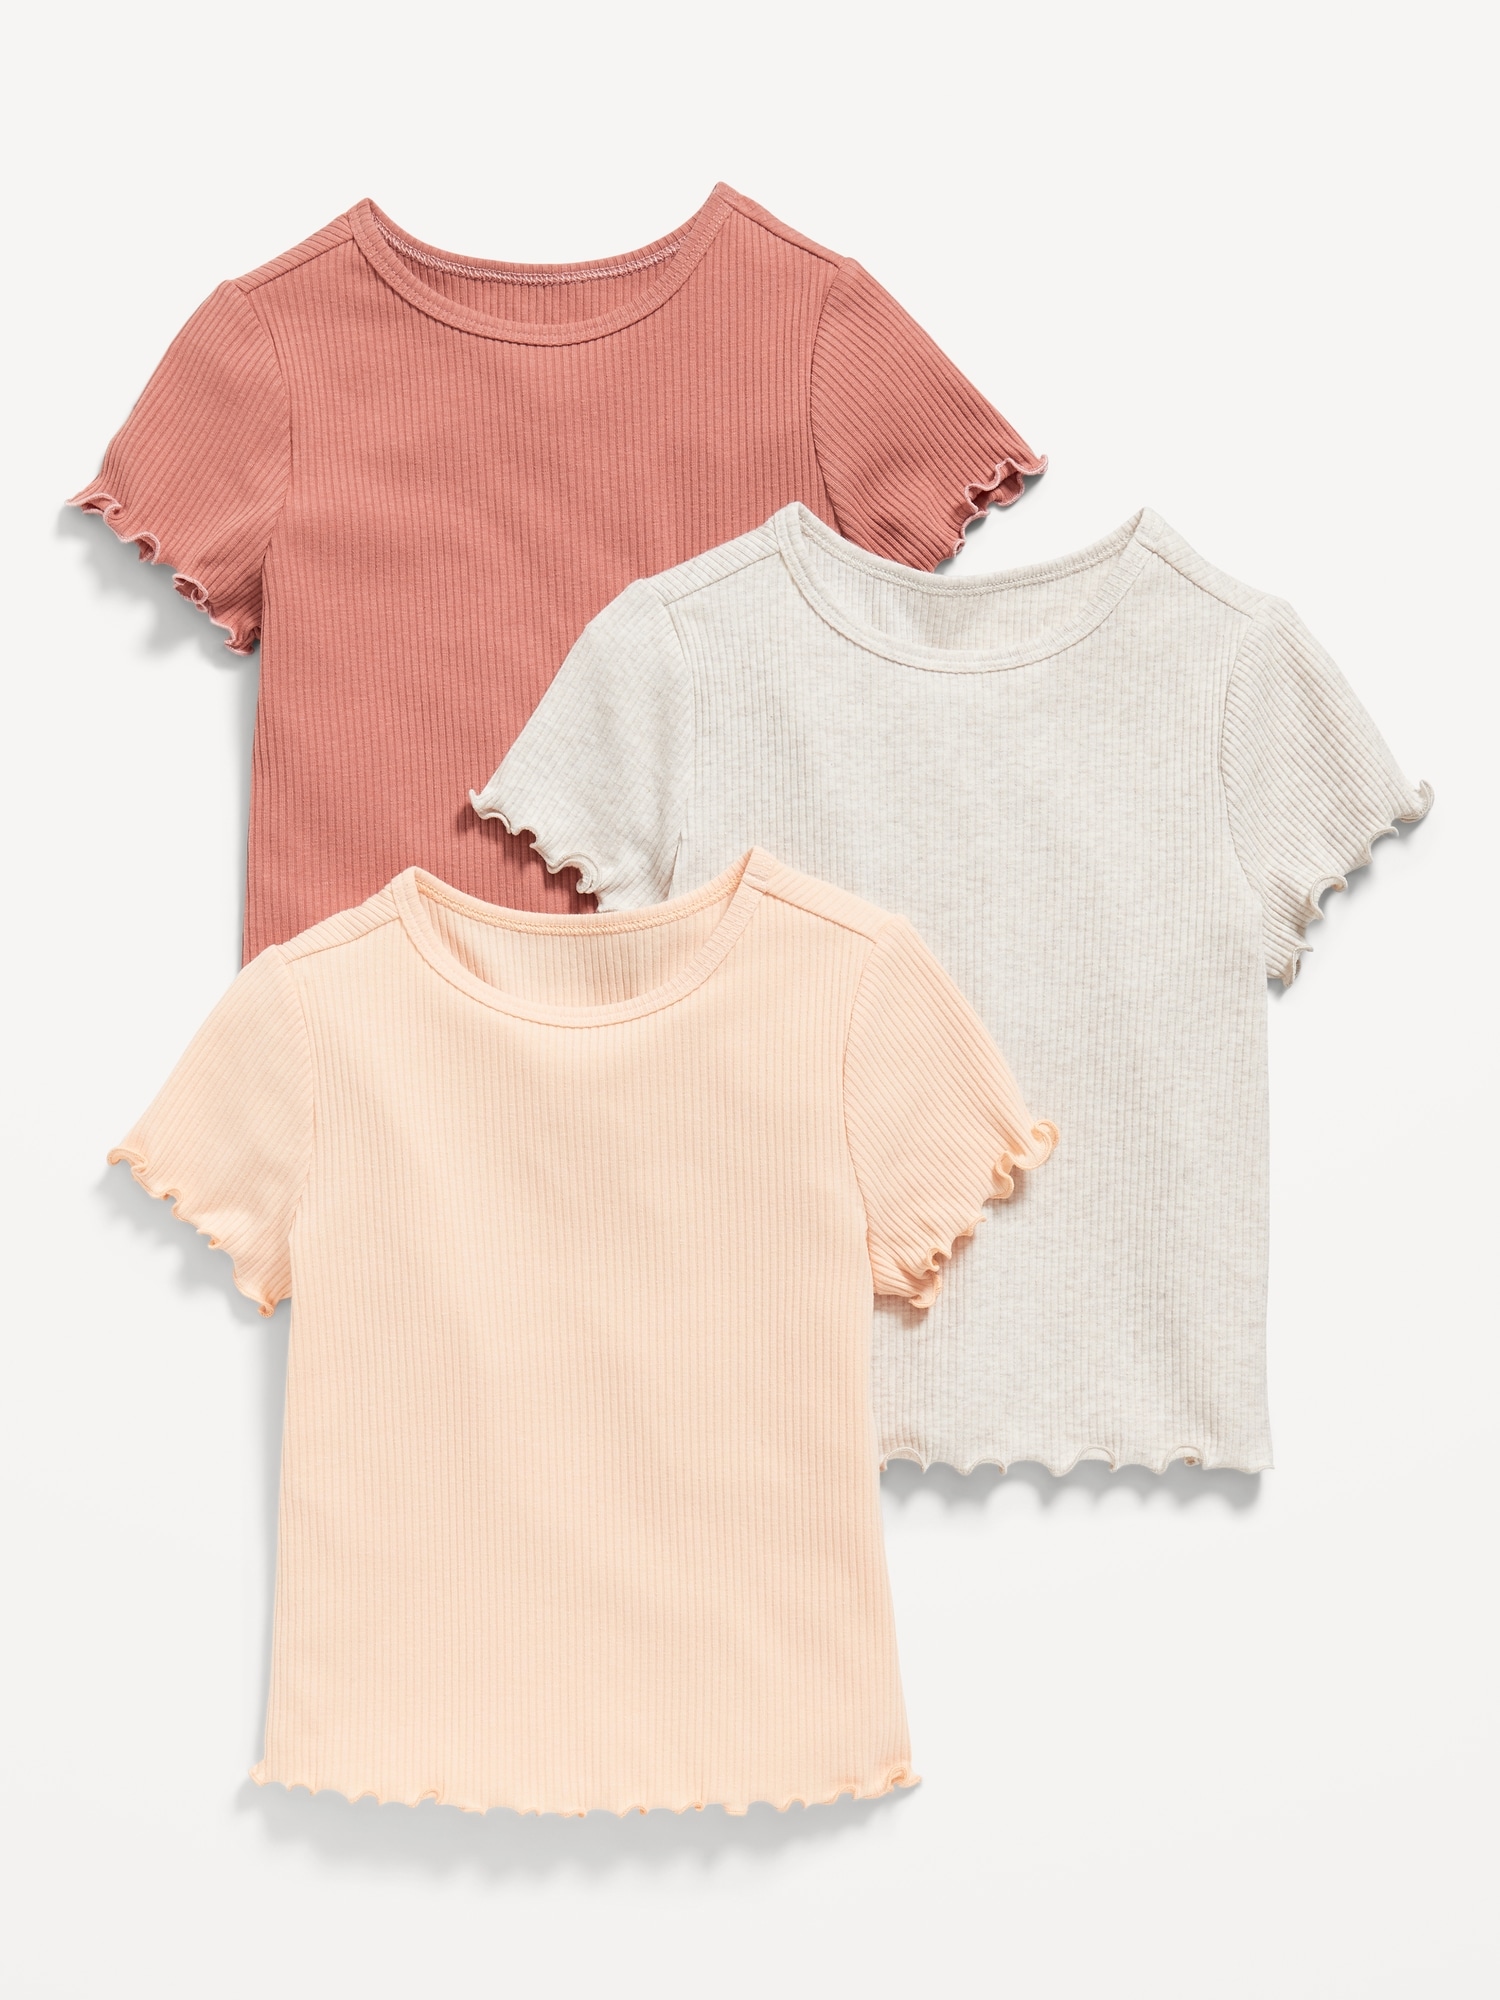 | Short-Sleeve T-Shirt Girls Old 3-Pack for Navy Lettuce-Edge Toddler